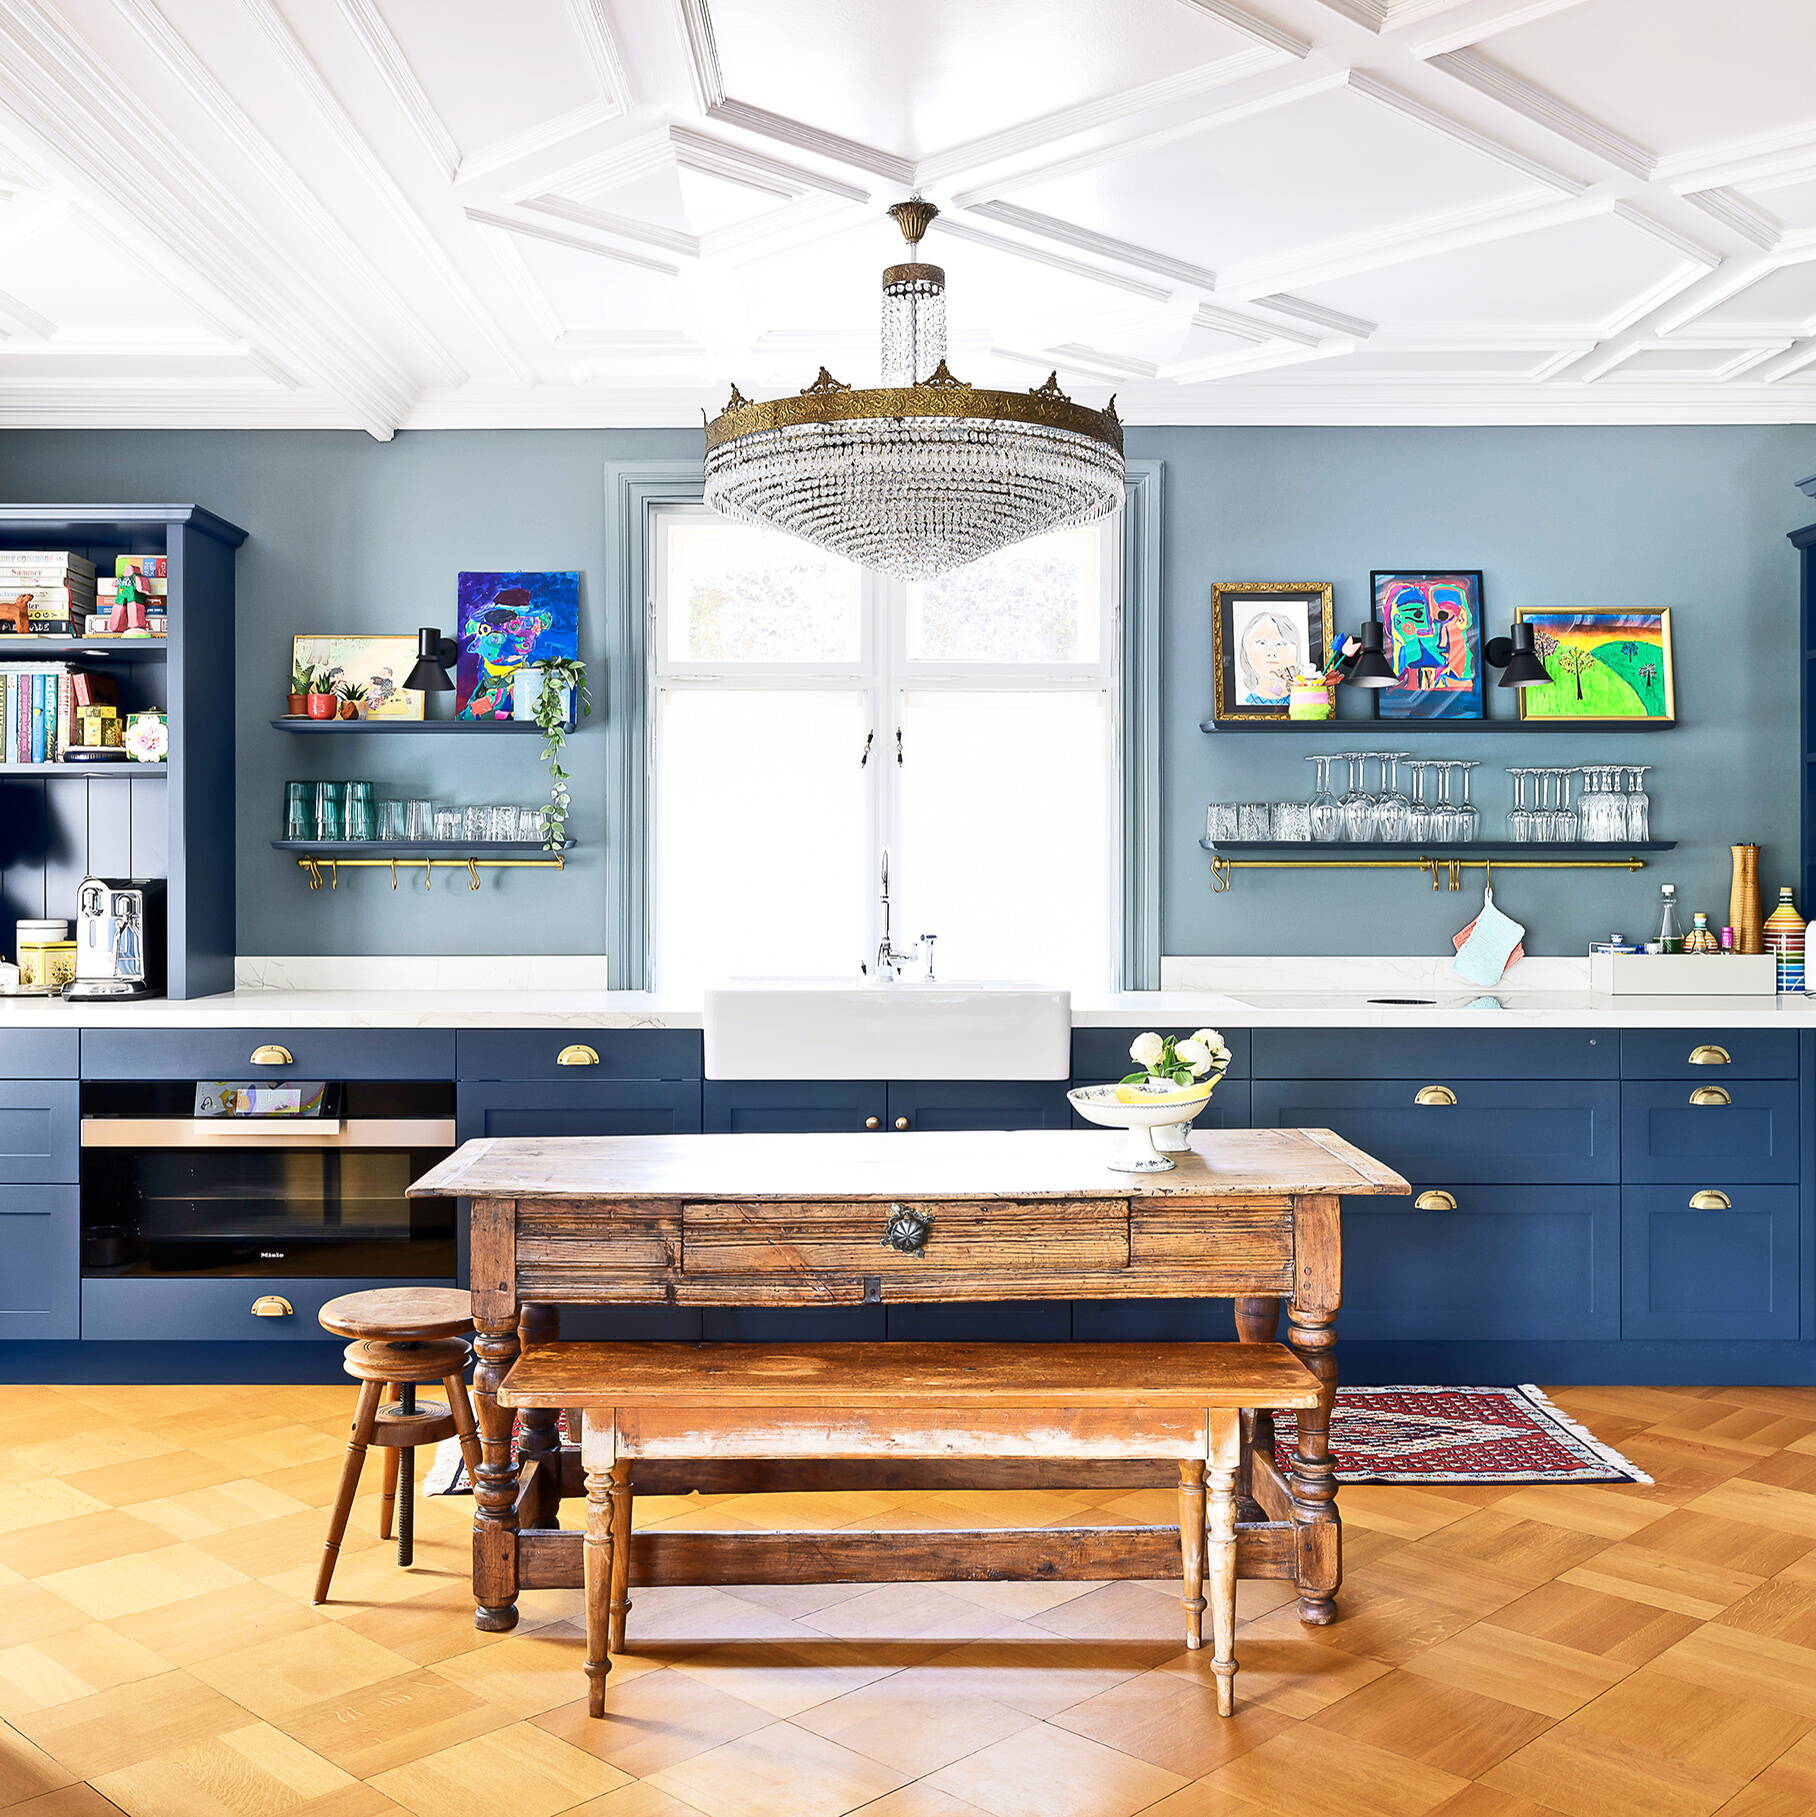 Eine modern umgebaute Küche mit Altbaucharme, Oberflächen und Boden in Holz gearbeitet, Stuckaturen und Kronleuchter an der Decke.